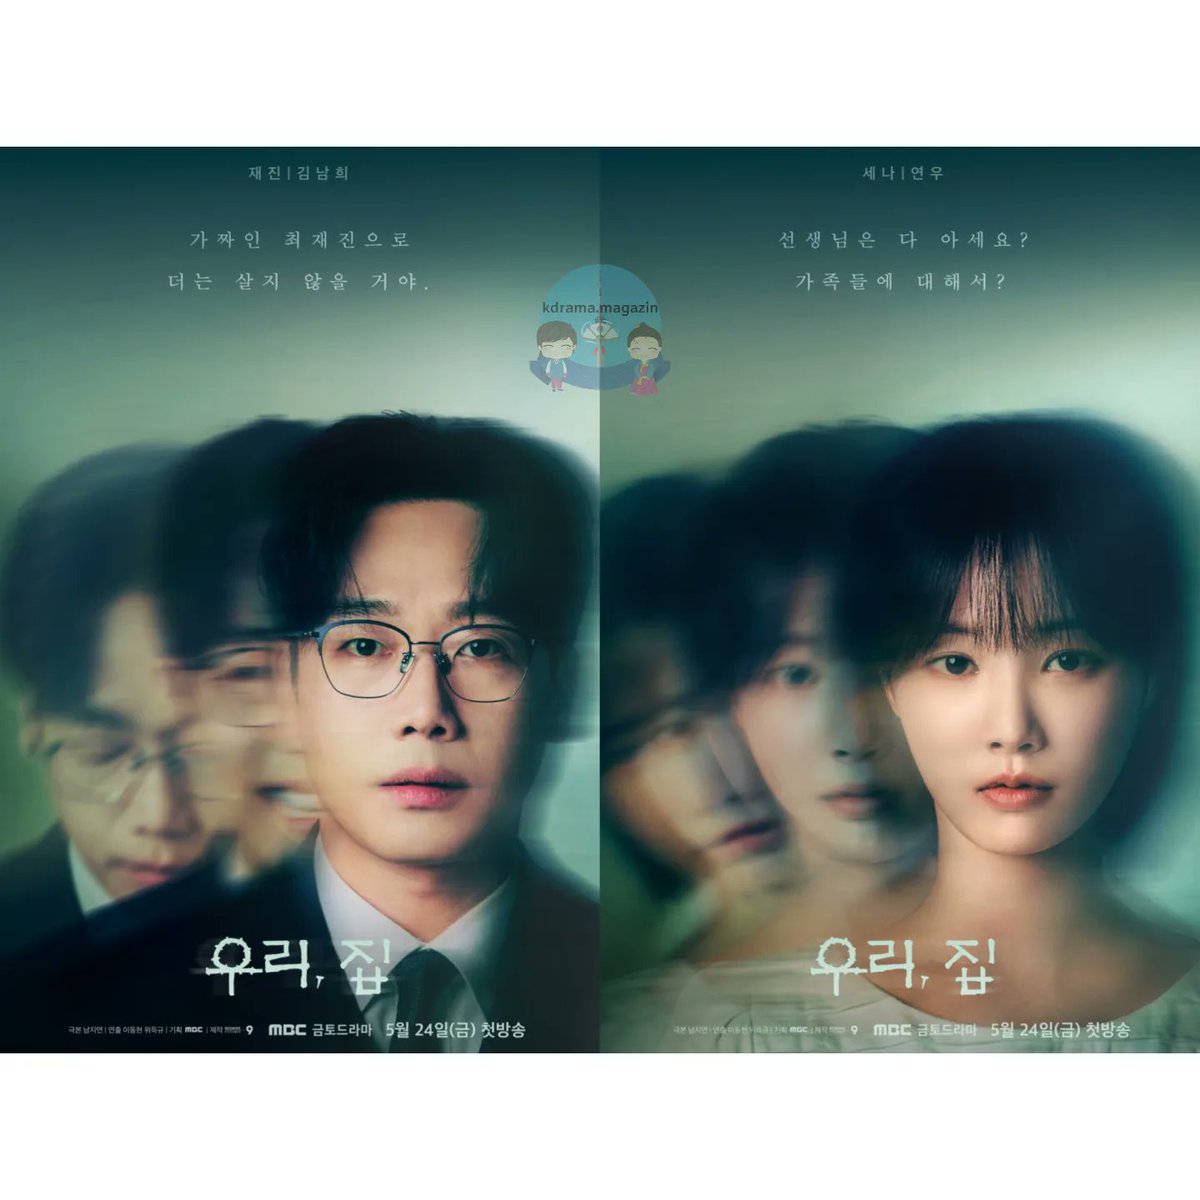 #BitterSweetHell Draması İçin Karakter Posterleri Yayınlandı.

🗓24 Mayıs'ta yayınlanacak. 

#KimHeeSun #LeeHyeYoung #KimNamHee #Yeonwoo #Gaslighting #OurHouse